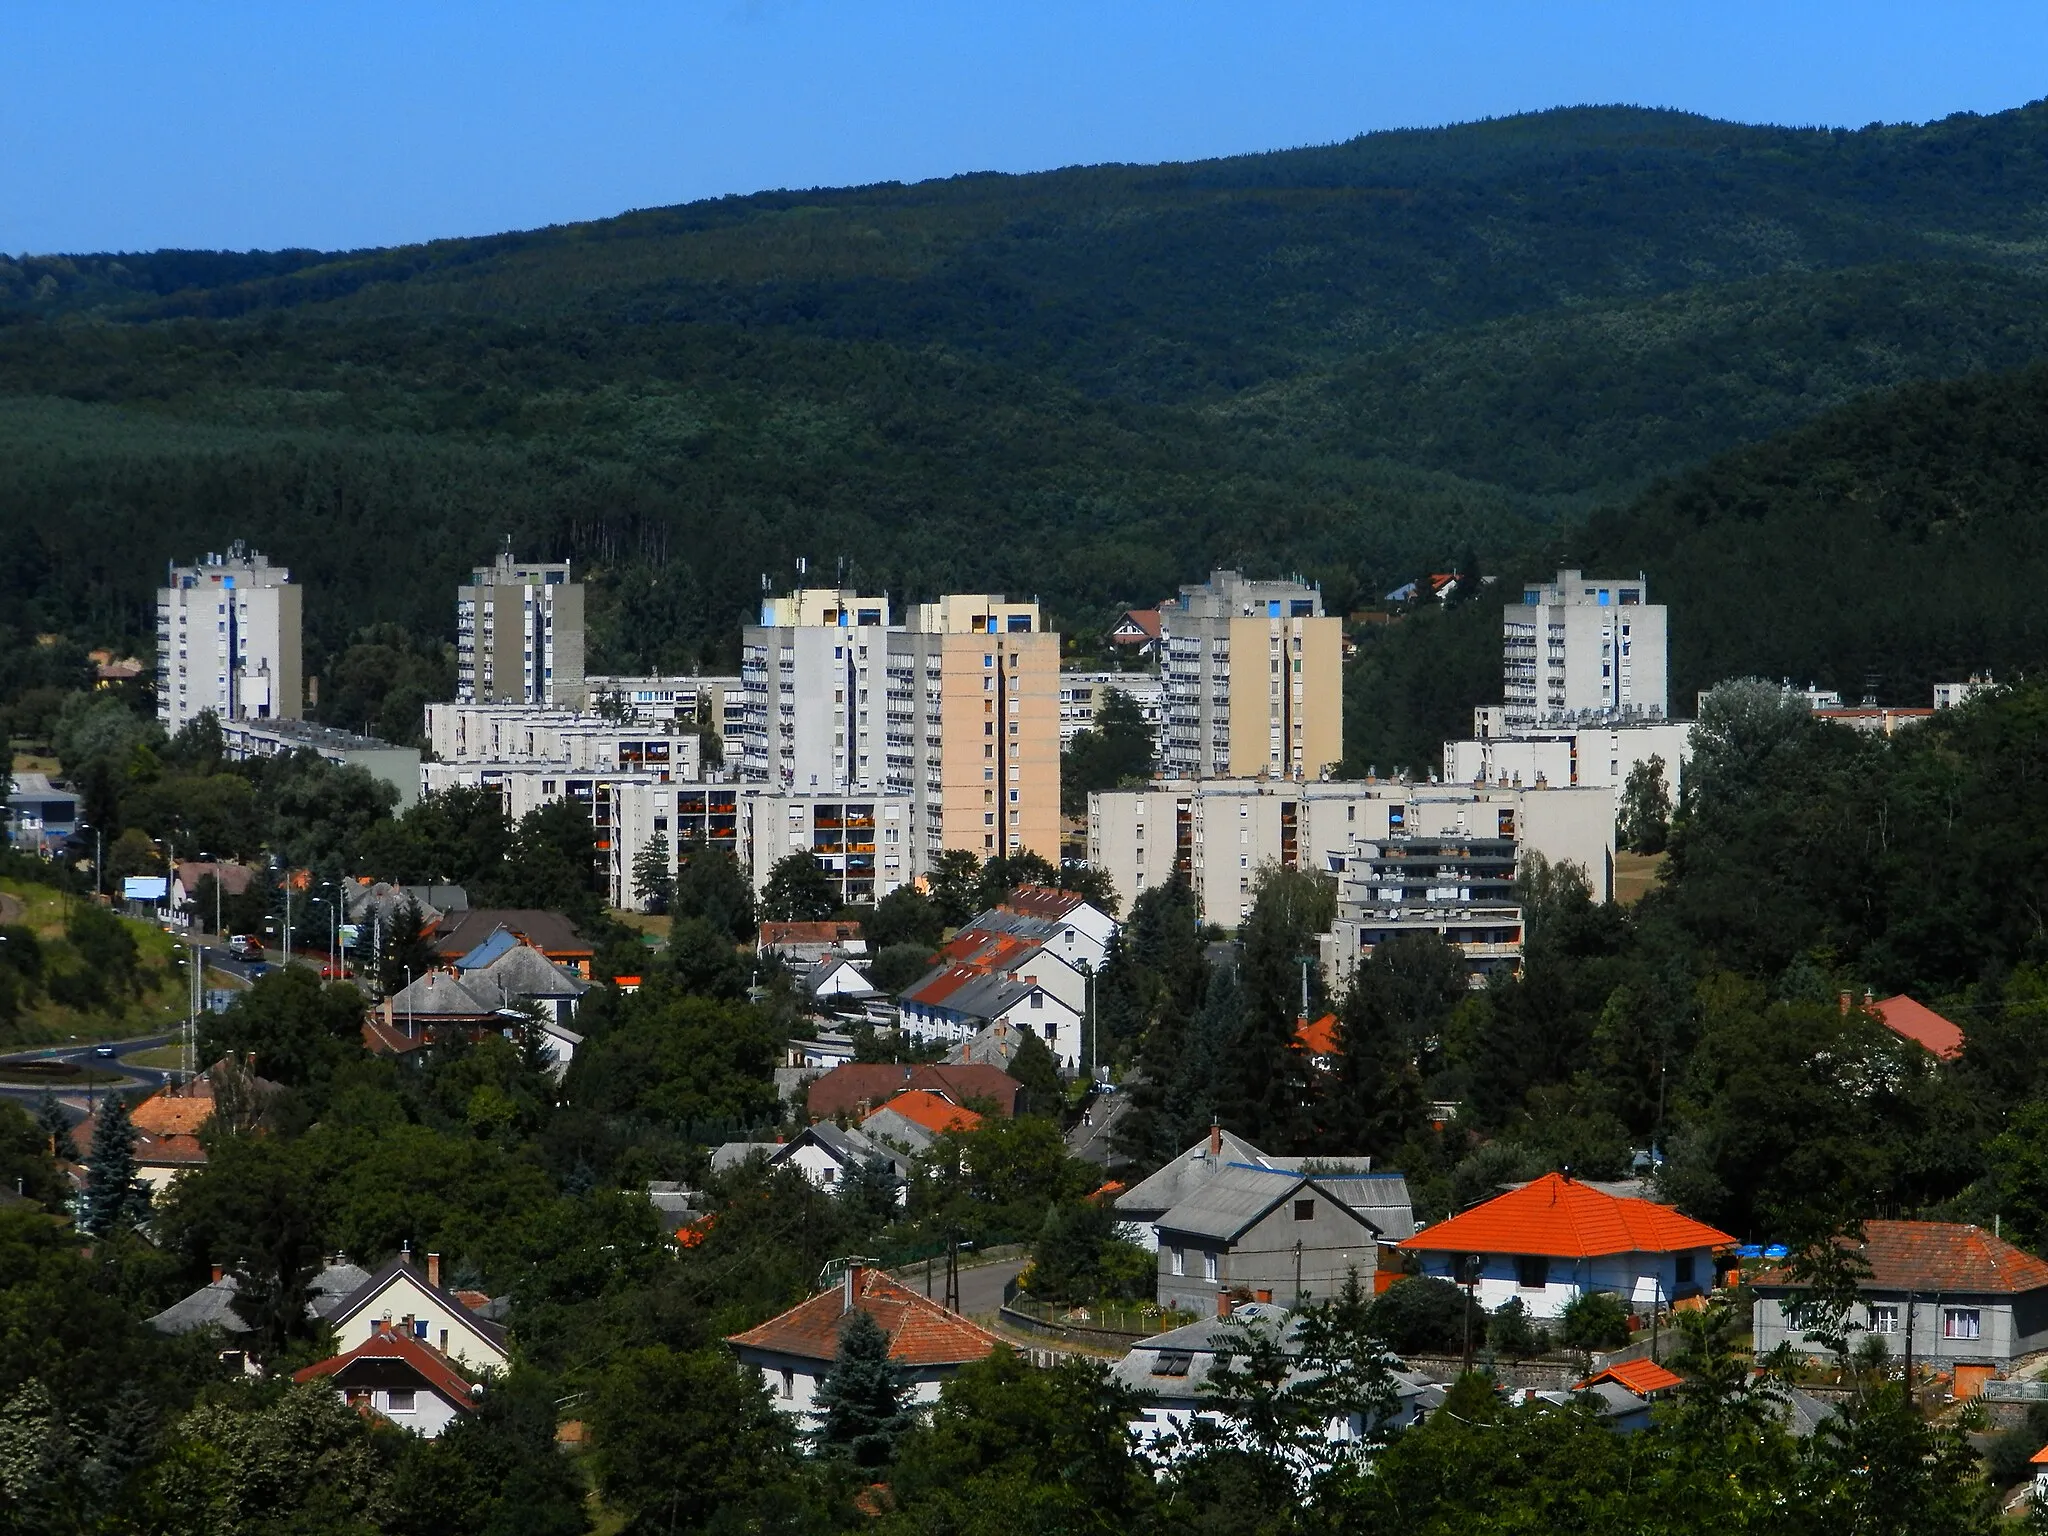 Image of Észak-Magyarország